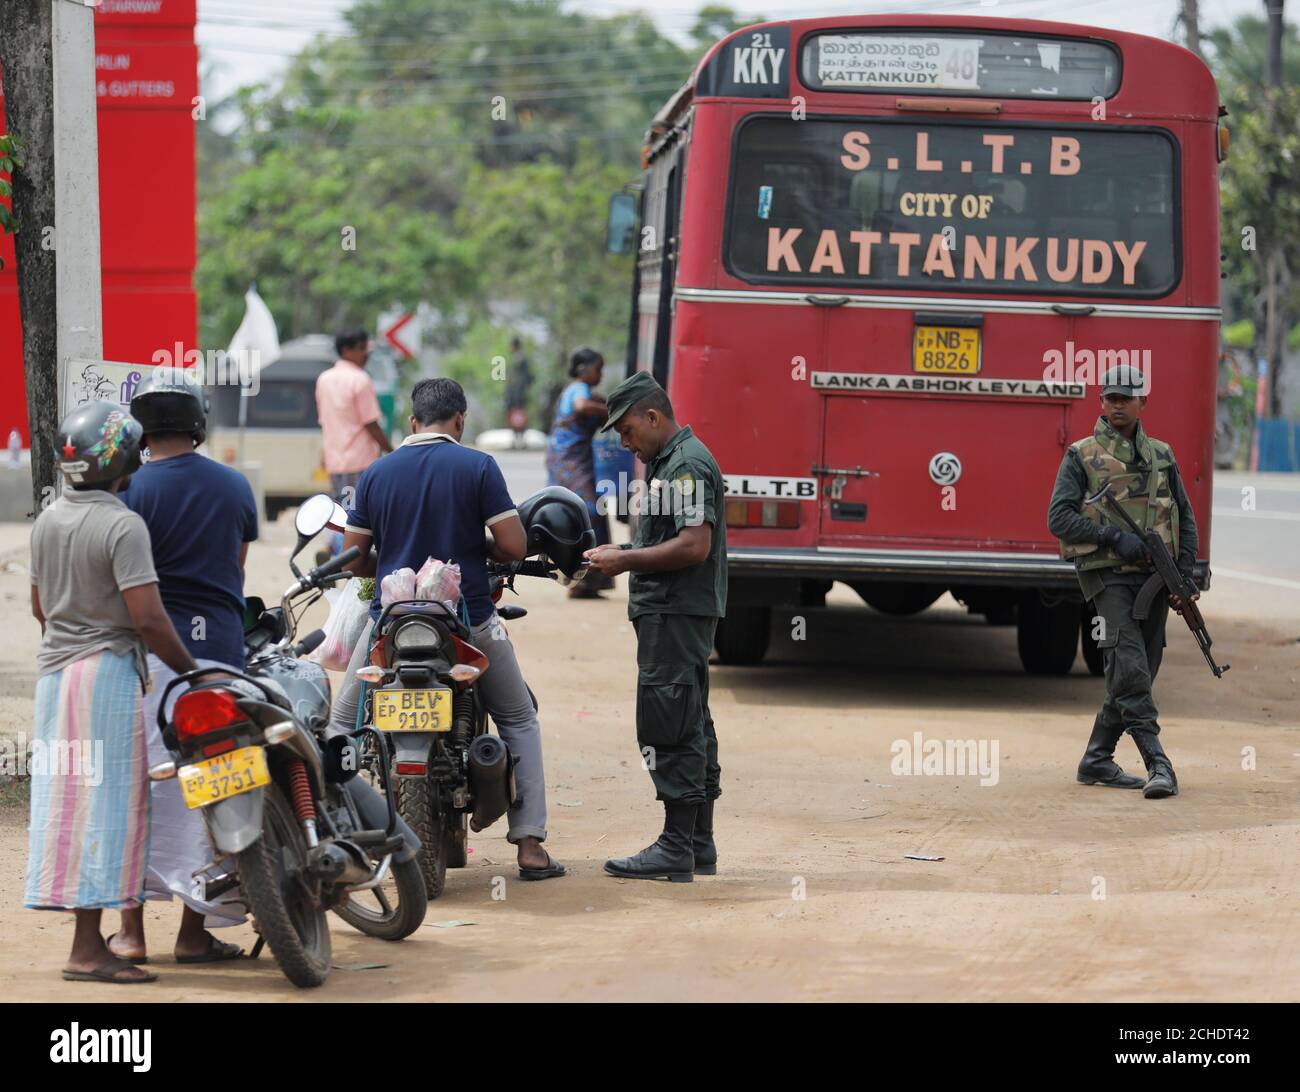 El personal del ejército de Sri Lanka se encuentra en un punto de control mientras busca a personas y sus bolsos en un punto de control en Kattankudy cerca de Batticaloa, Sri Lanka, 28 de abril de 2019. REUTERS/Dinuka Liyanawatte Foto de stock